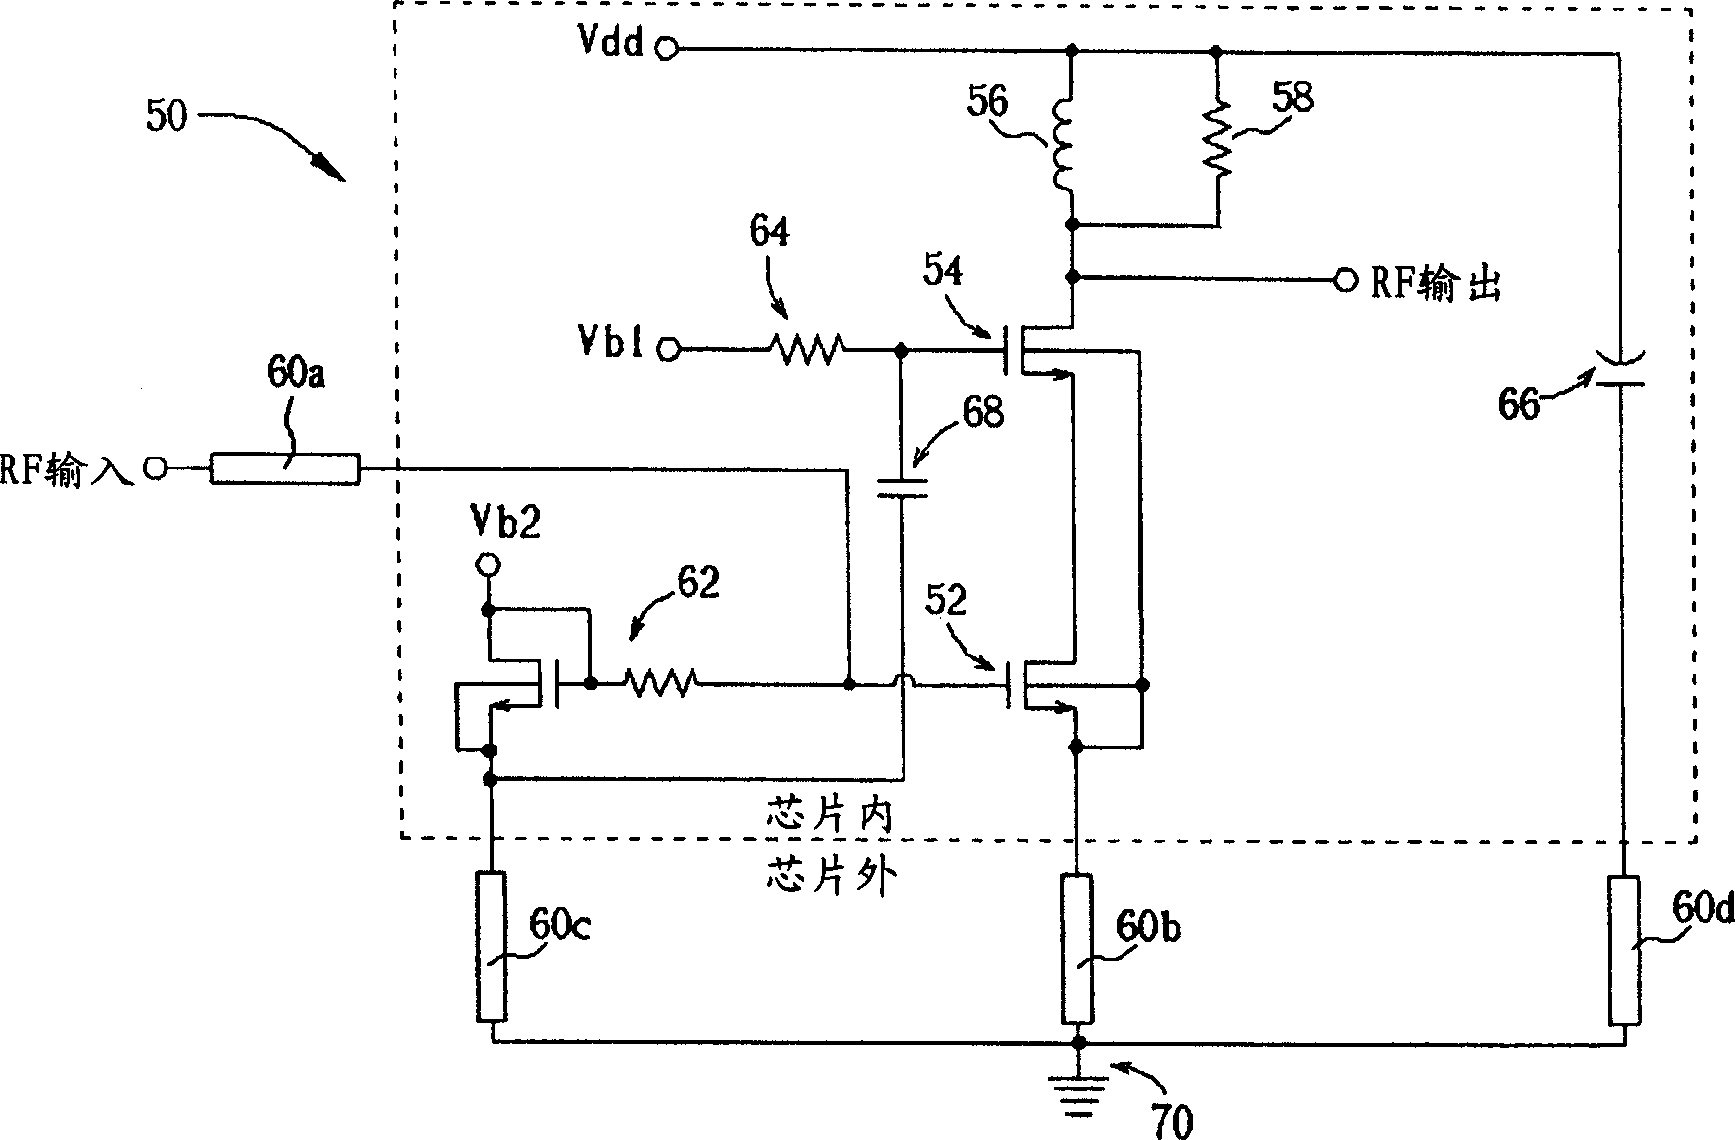 Low-noise amplifier